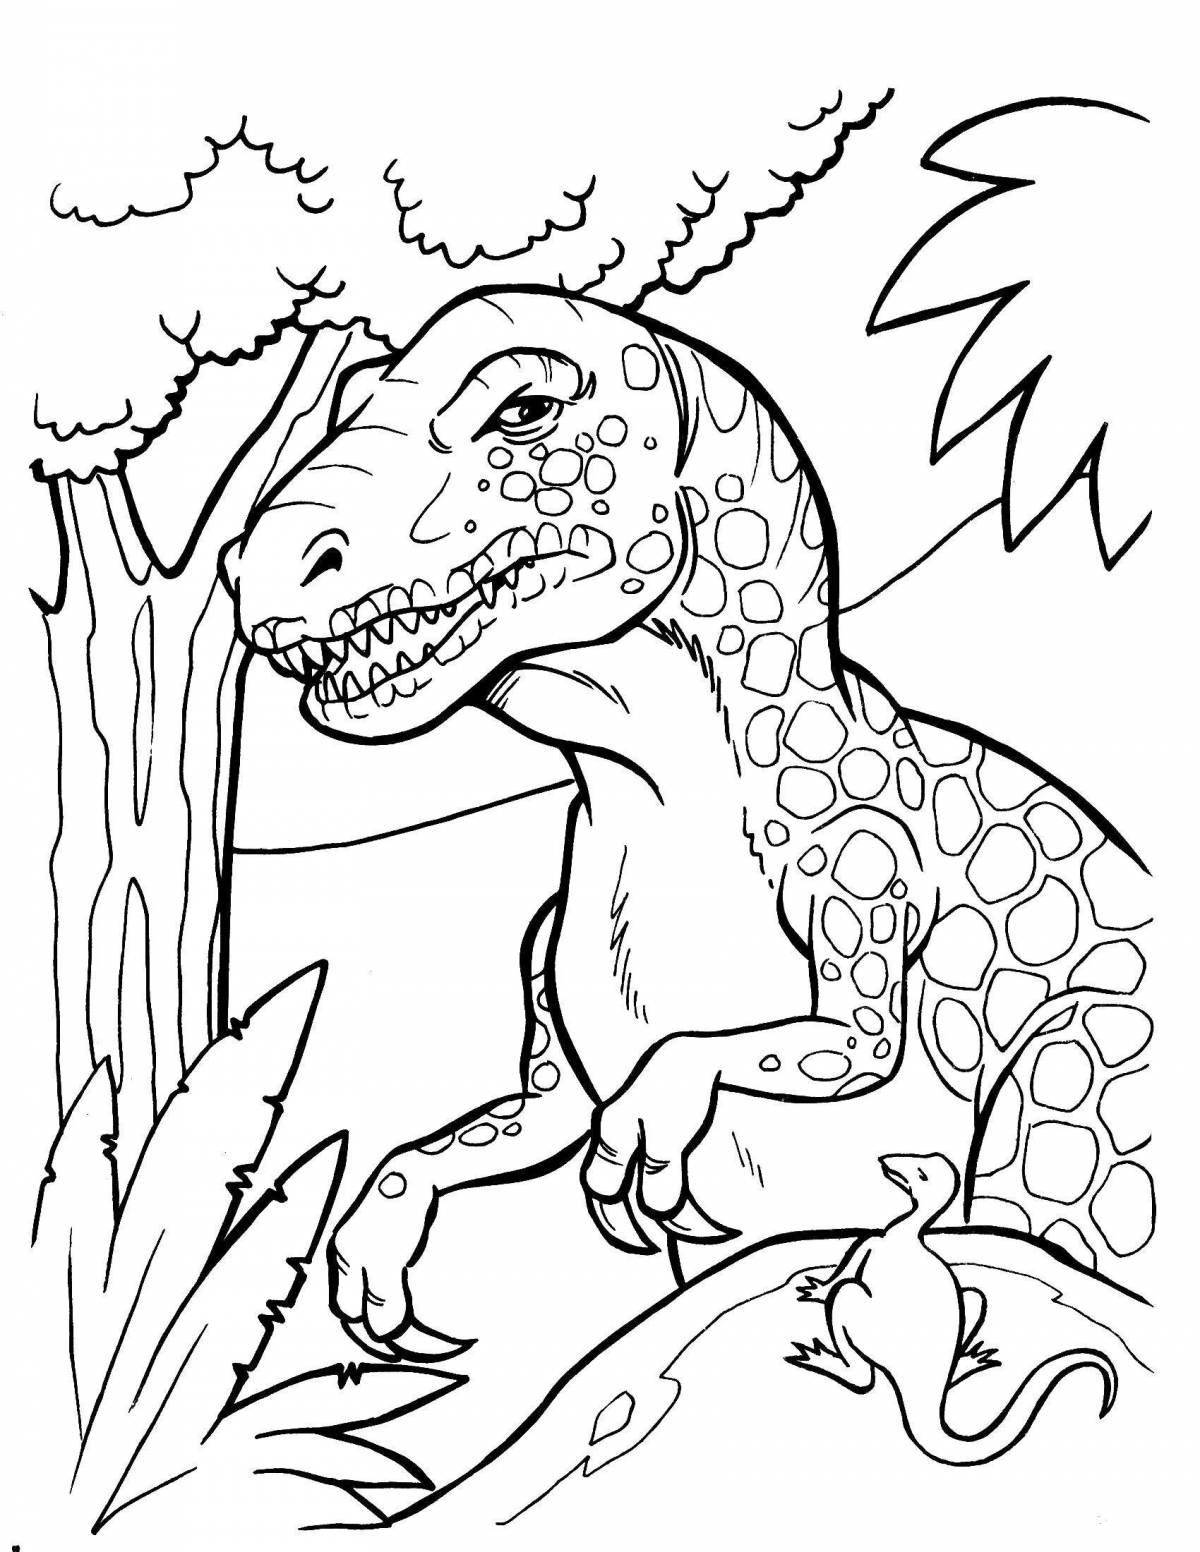 Развлекательная раскраска с изображением динозавров